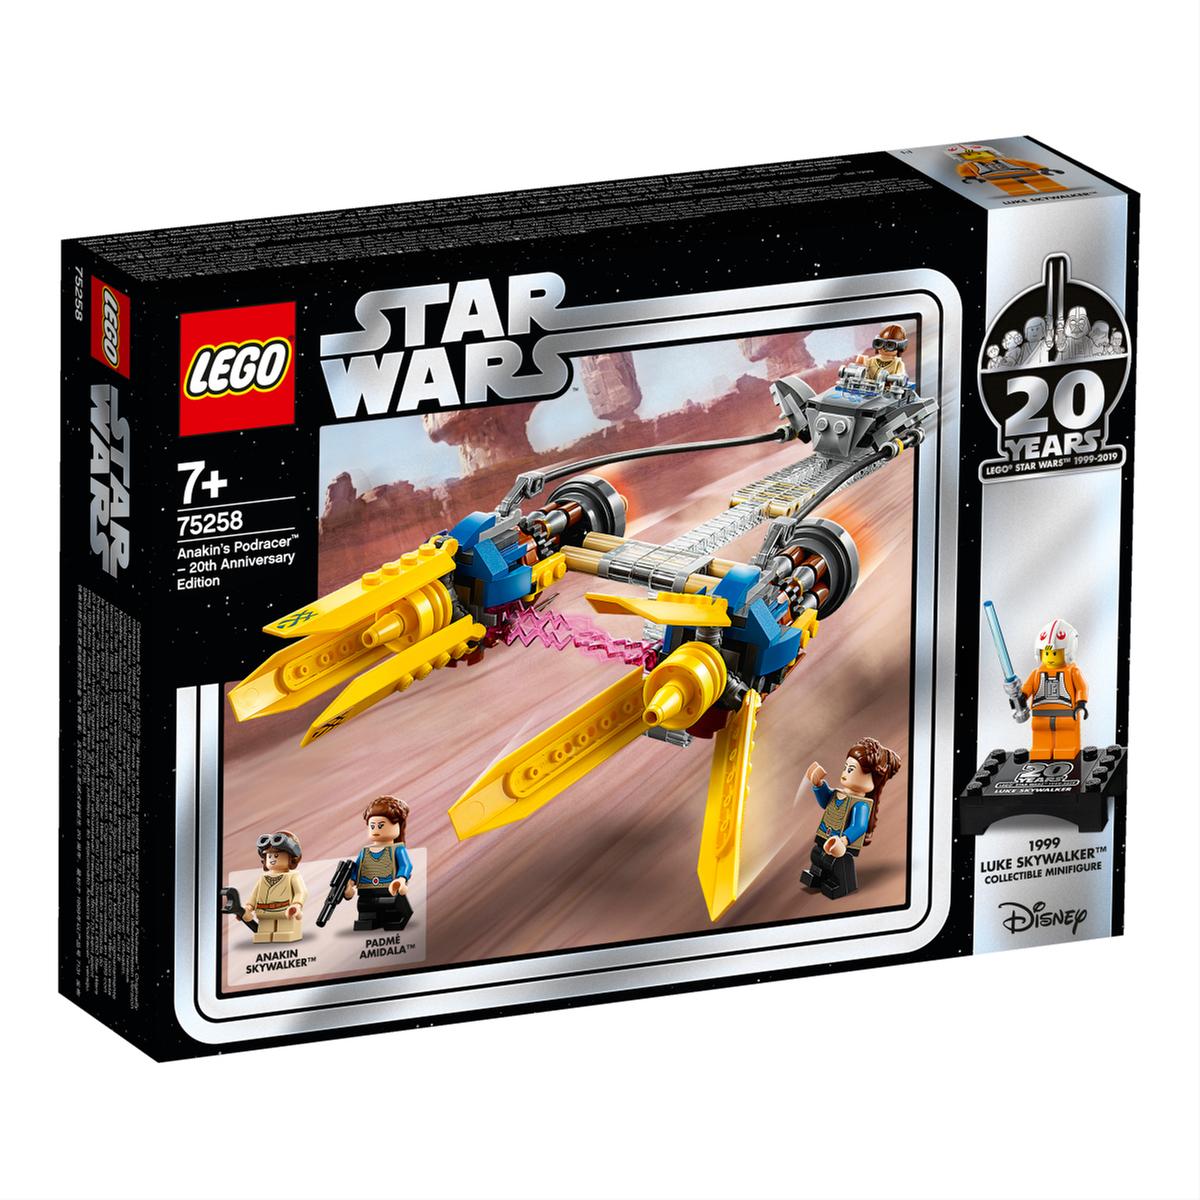 LEGO Star Wars - Vaina de Carreras de Anakin - 75258 | Star Wars |  Toys"R"Us España